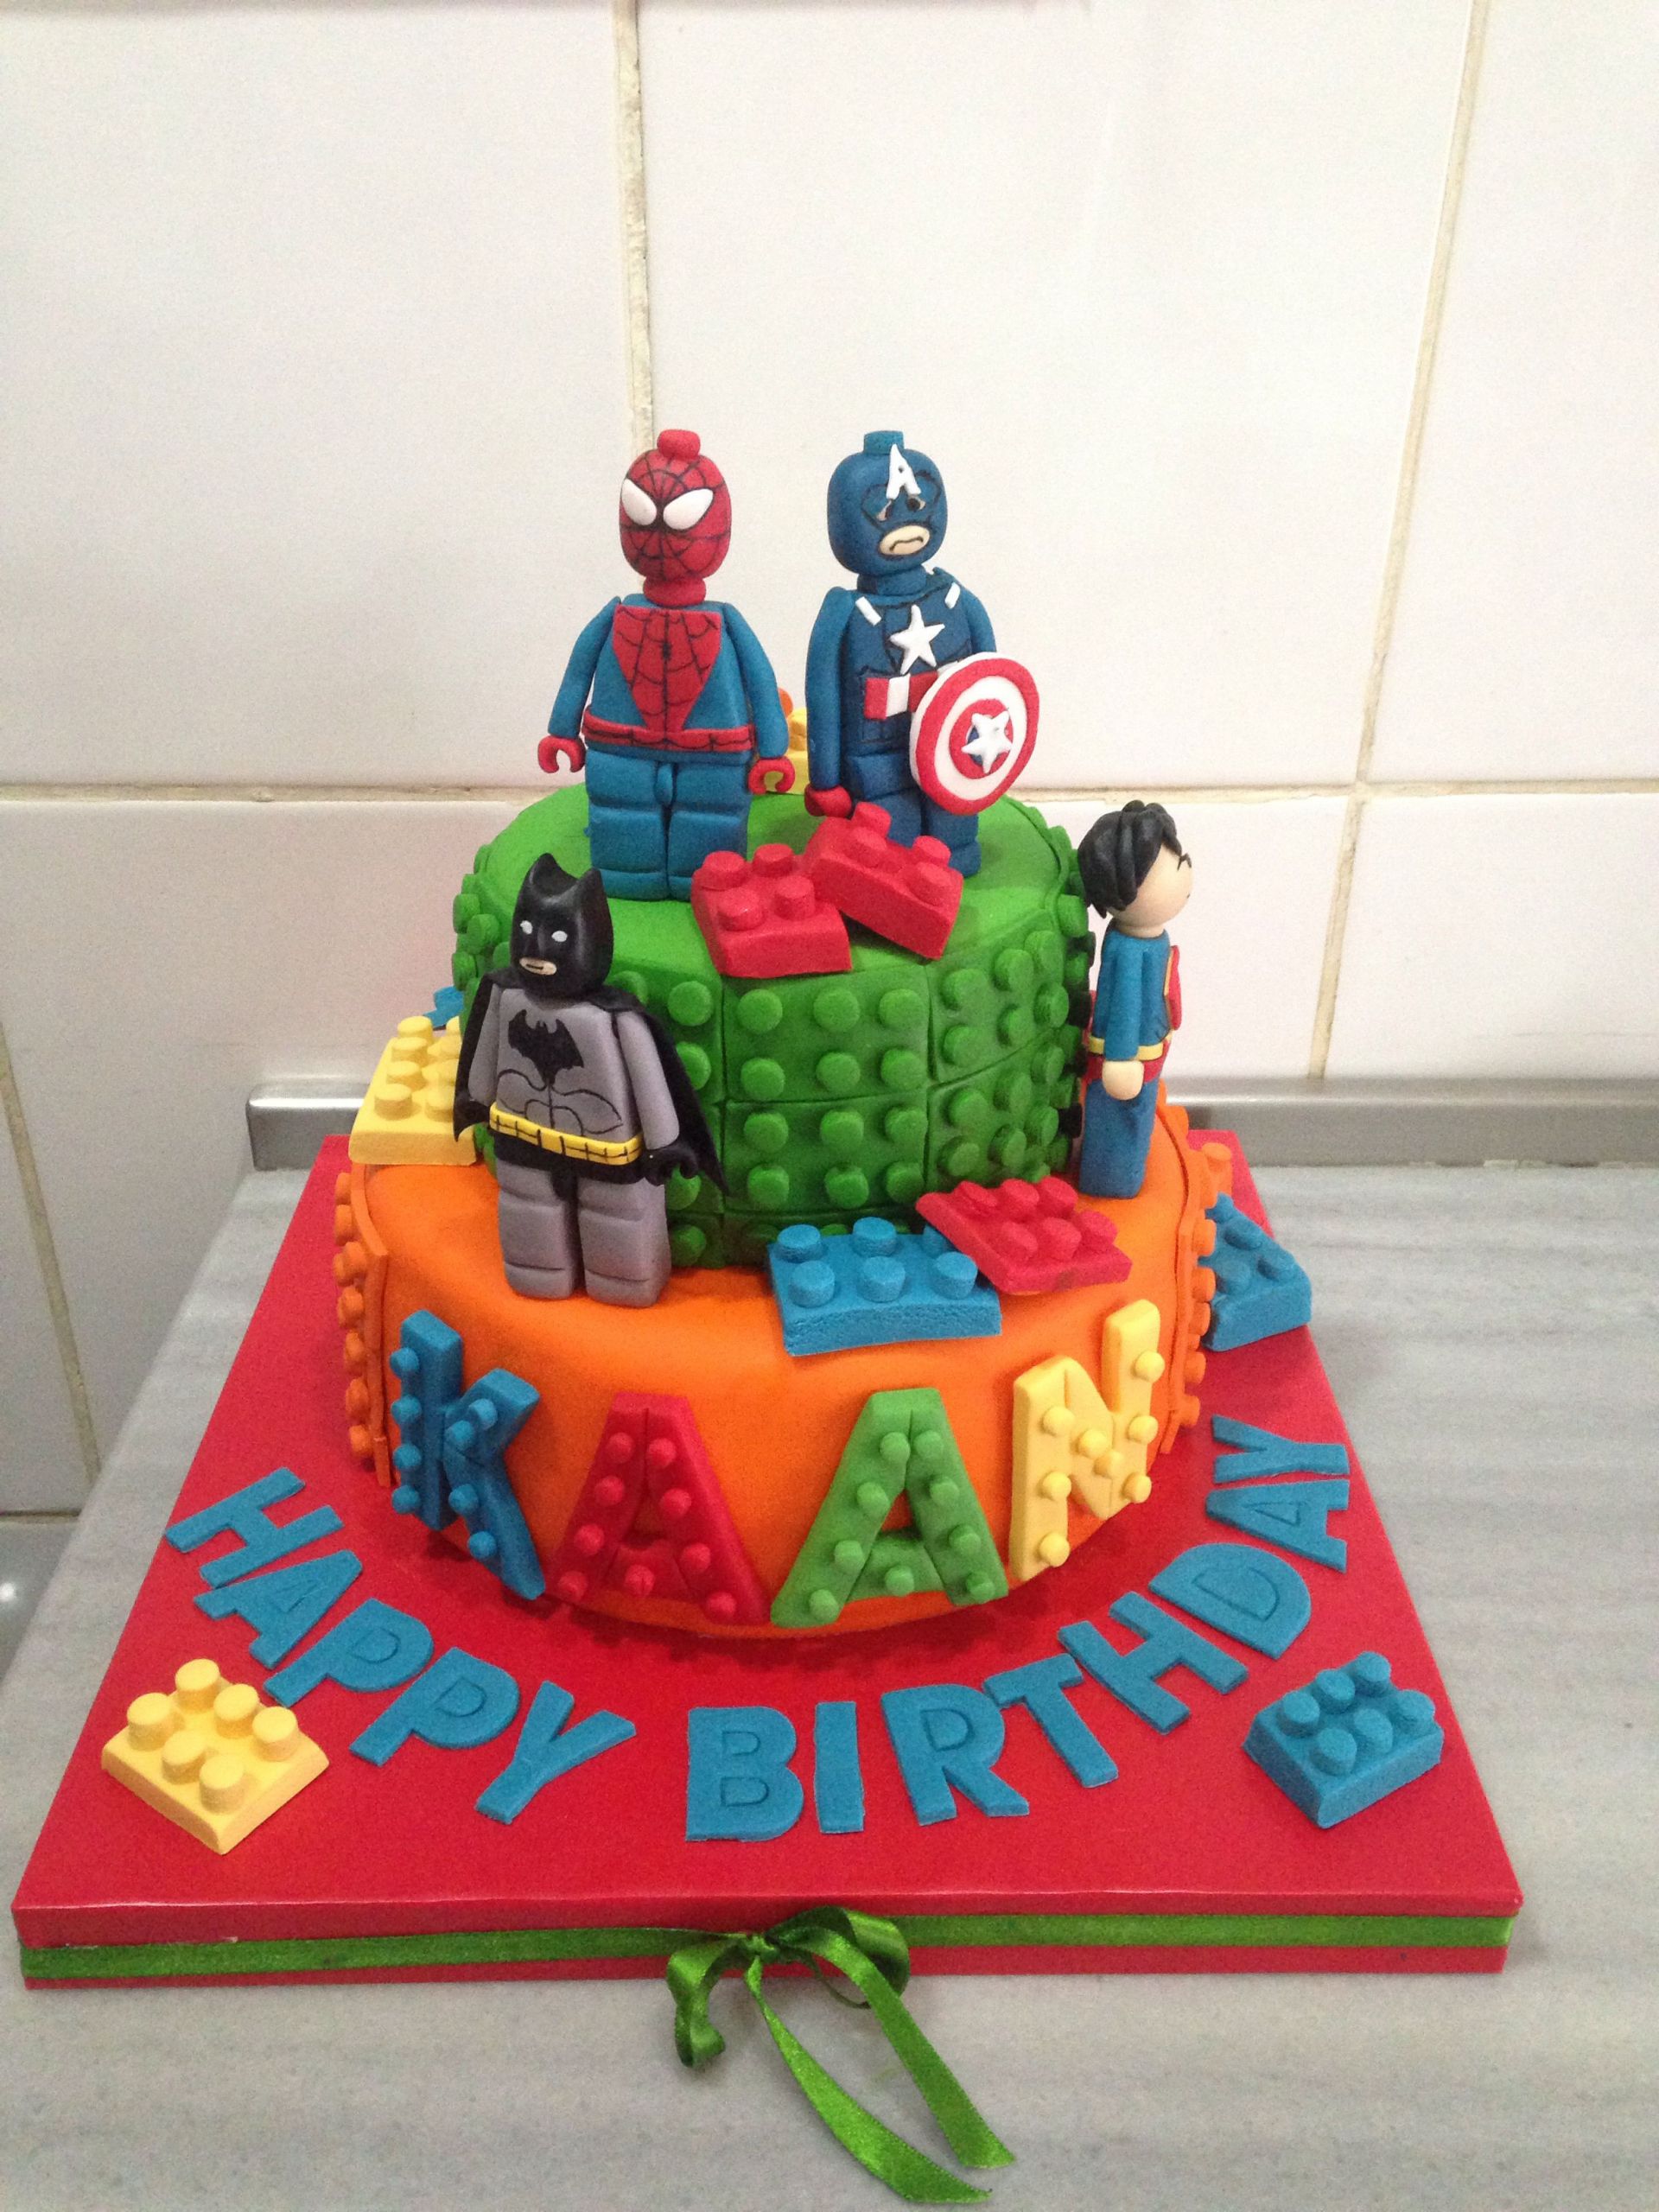 Lego Movie Birthday Cake
 Lego birthday cake